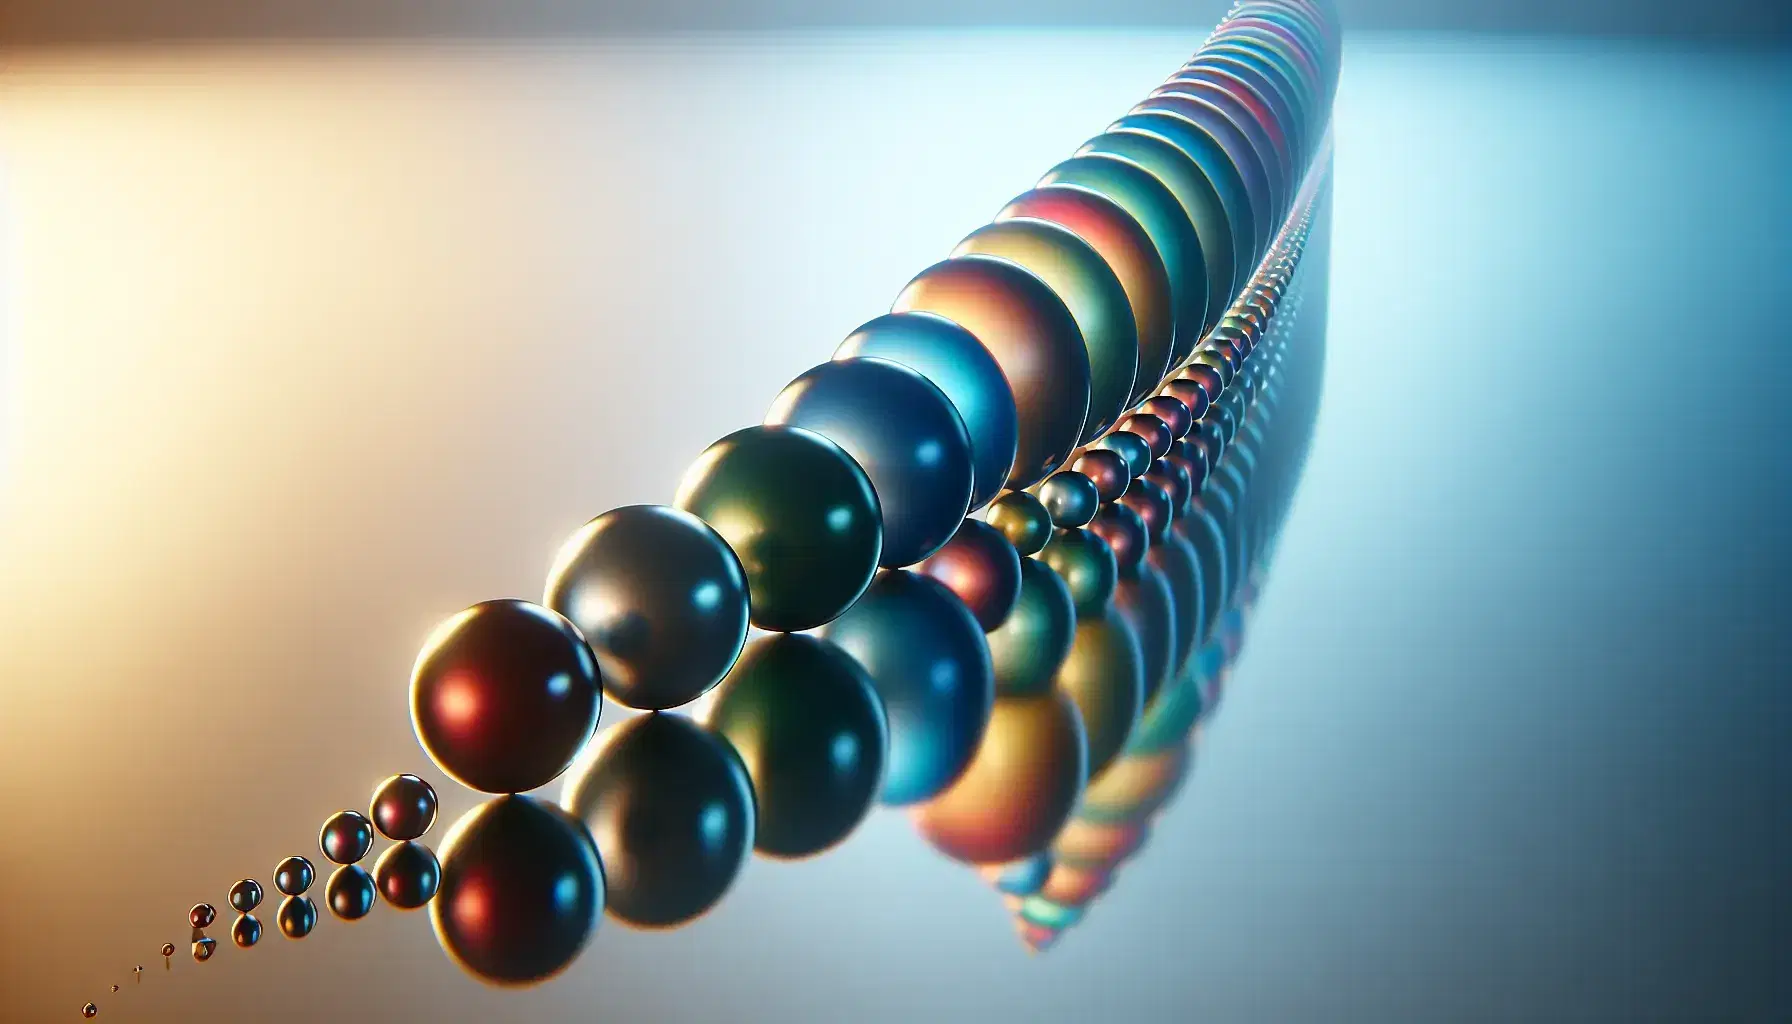 Esferas translúcidas de colores en gradiente de tamaño sobre superficie reflectante con fondo azul a blanco.